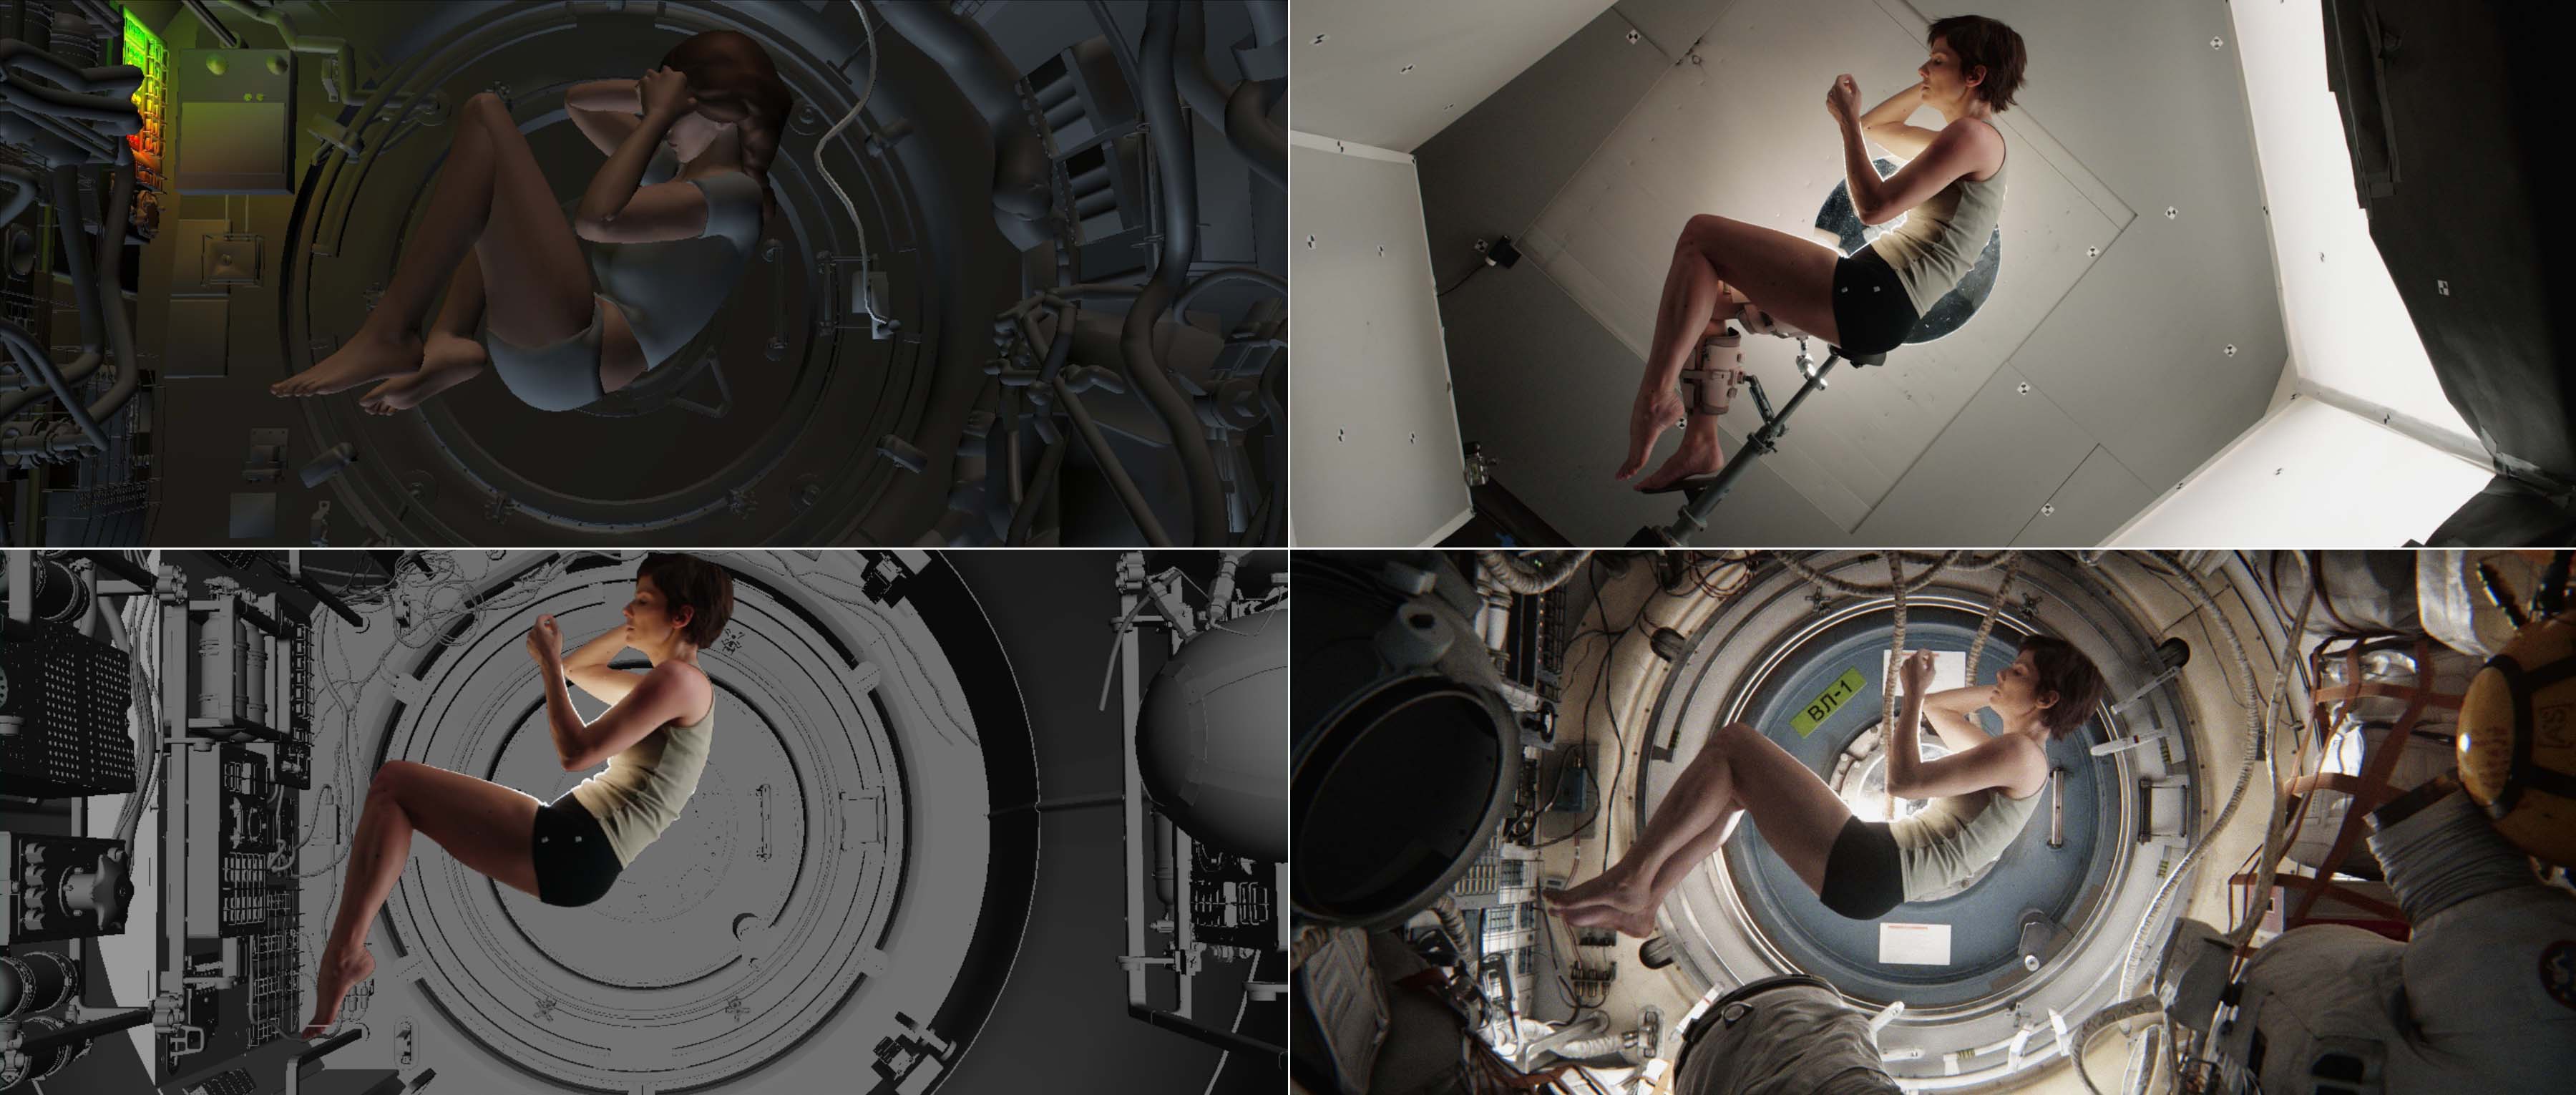 Articolo gravità ISS - Film "Gravity"